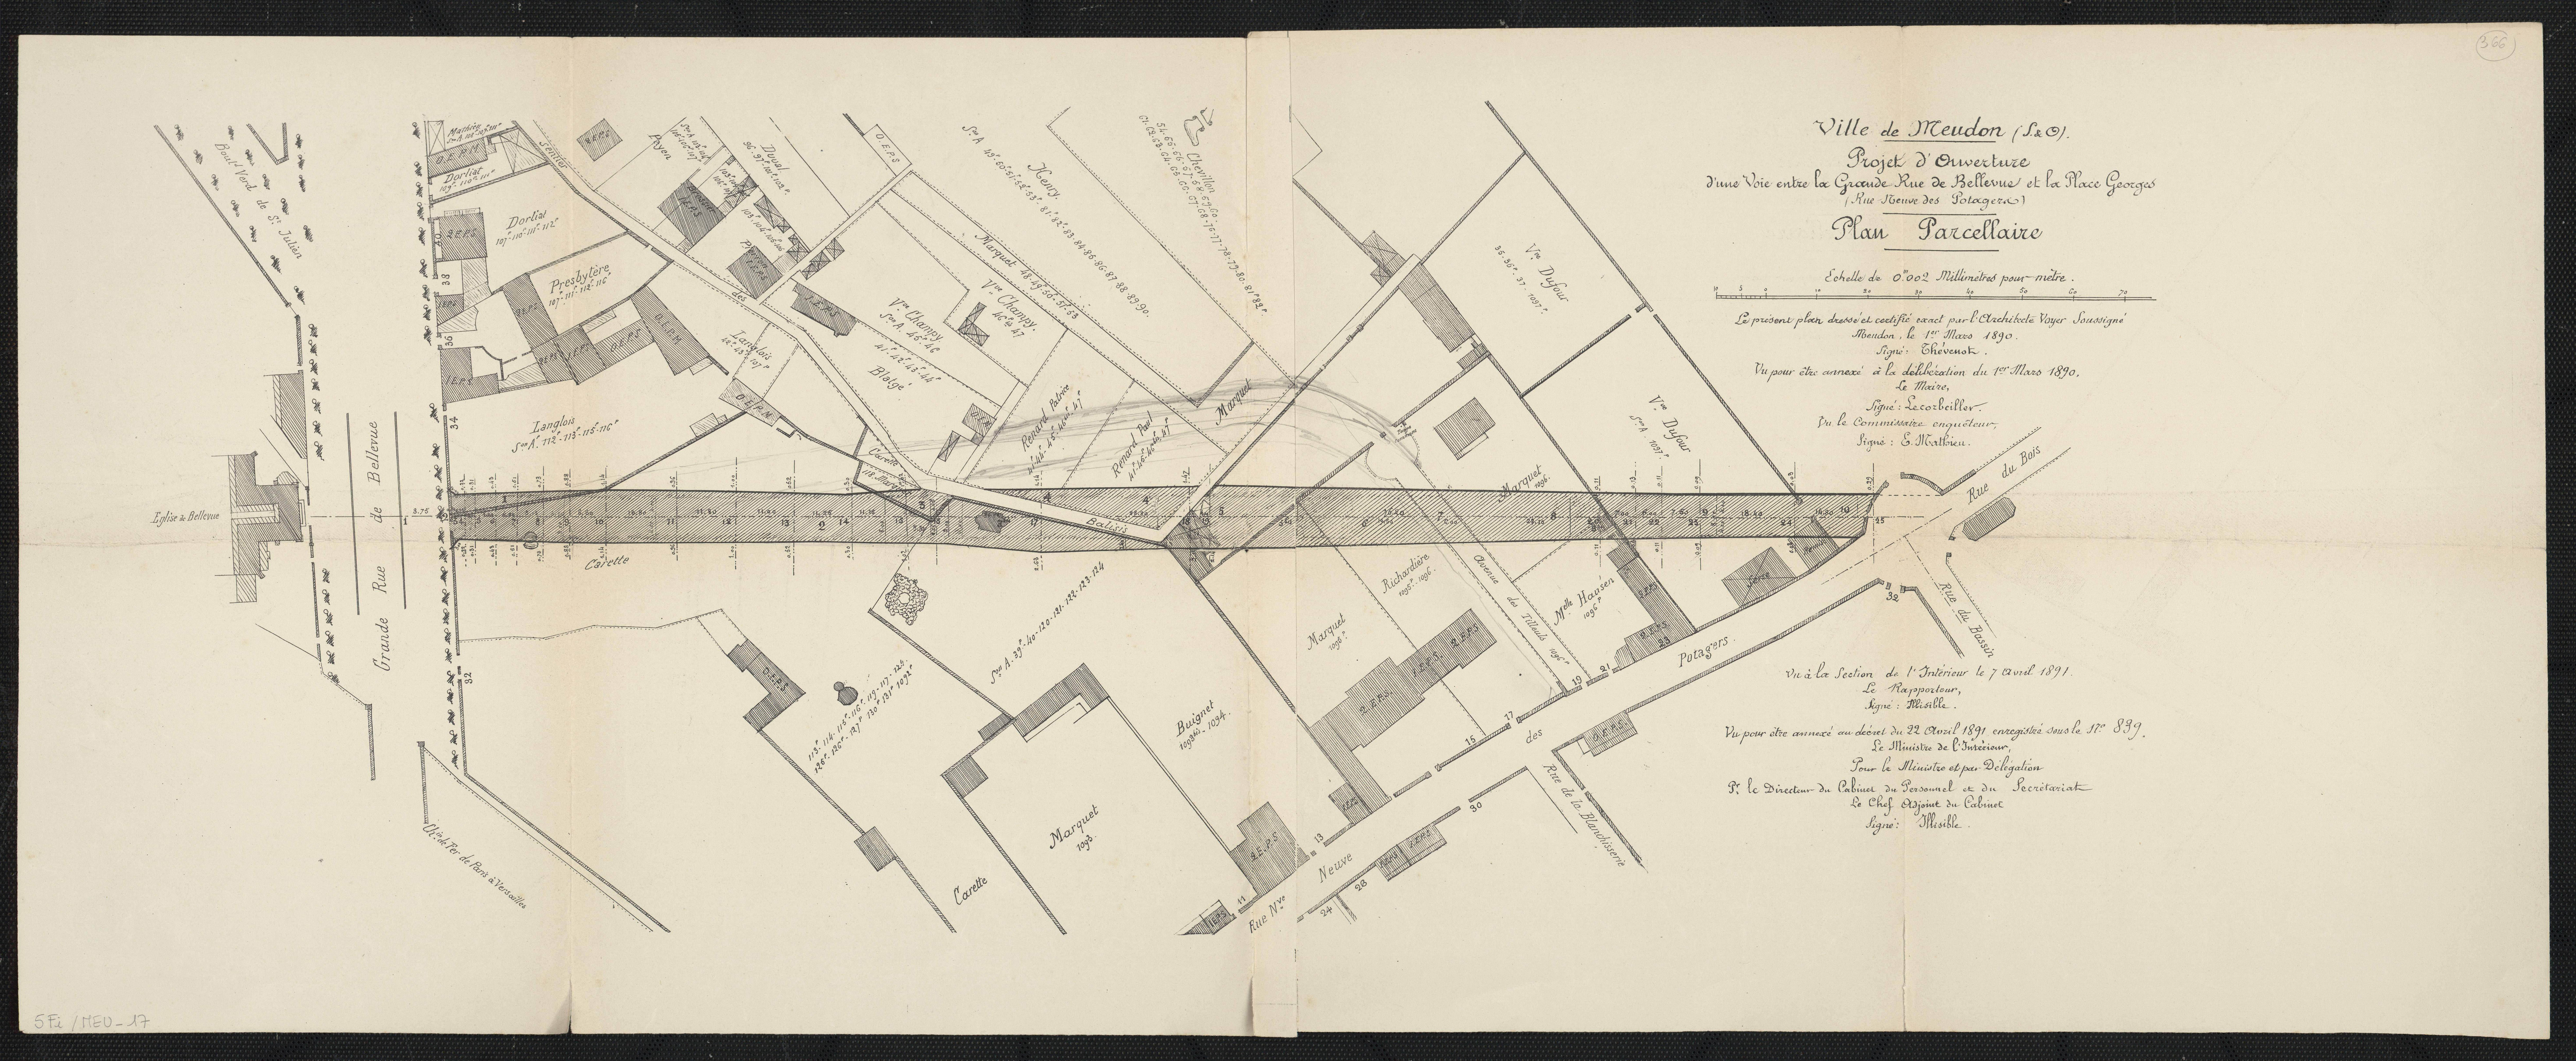 Ville de Meudon (S&O), projet d'ouverture d'une voie entre la Grande Rue de Bellevue et la place Georges (Rue Neuve des Potagers). 1er mars 1890.